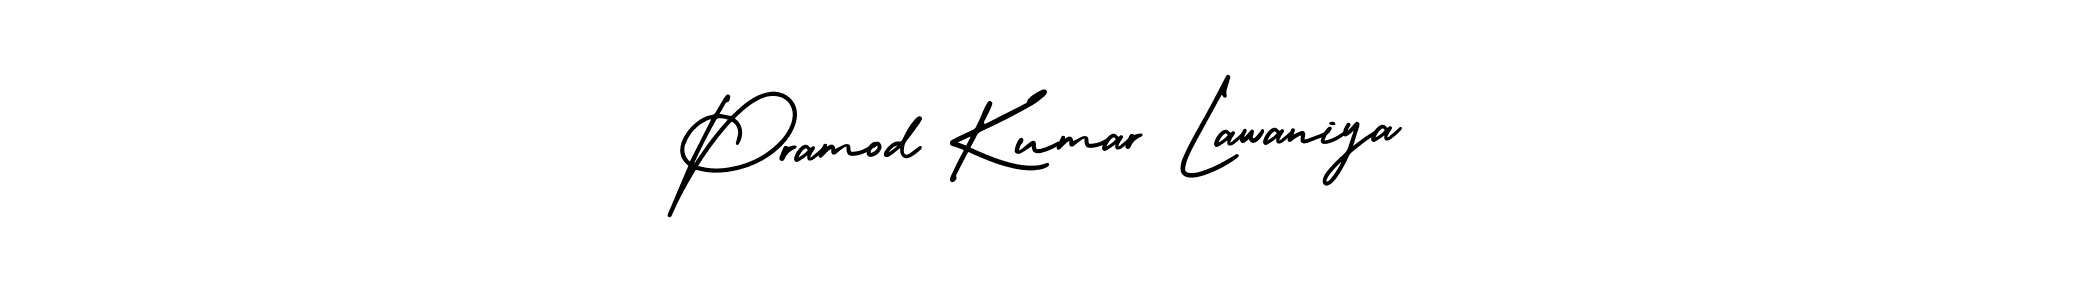 Pramod Kumar Lawaniya stylish signature style. Best Handwritten Sign (AmerikaSignatureDemo-Regular) for my name. Handwritten Signature Collection Ideas for my name Pramod Kumar Lawaniya. Pramod Kumar Lawaniya signature style 3 images and pictures png